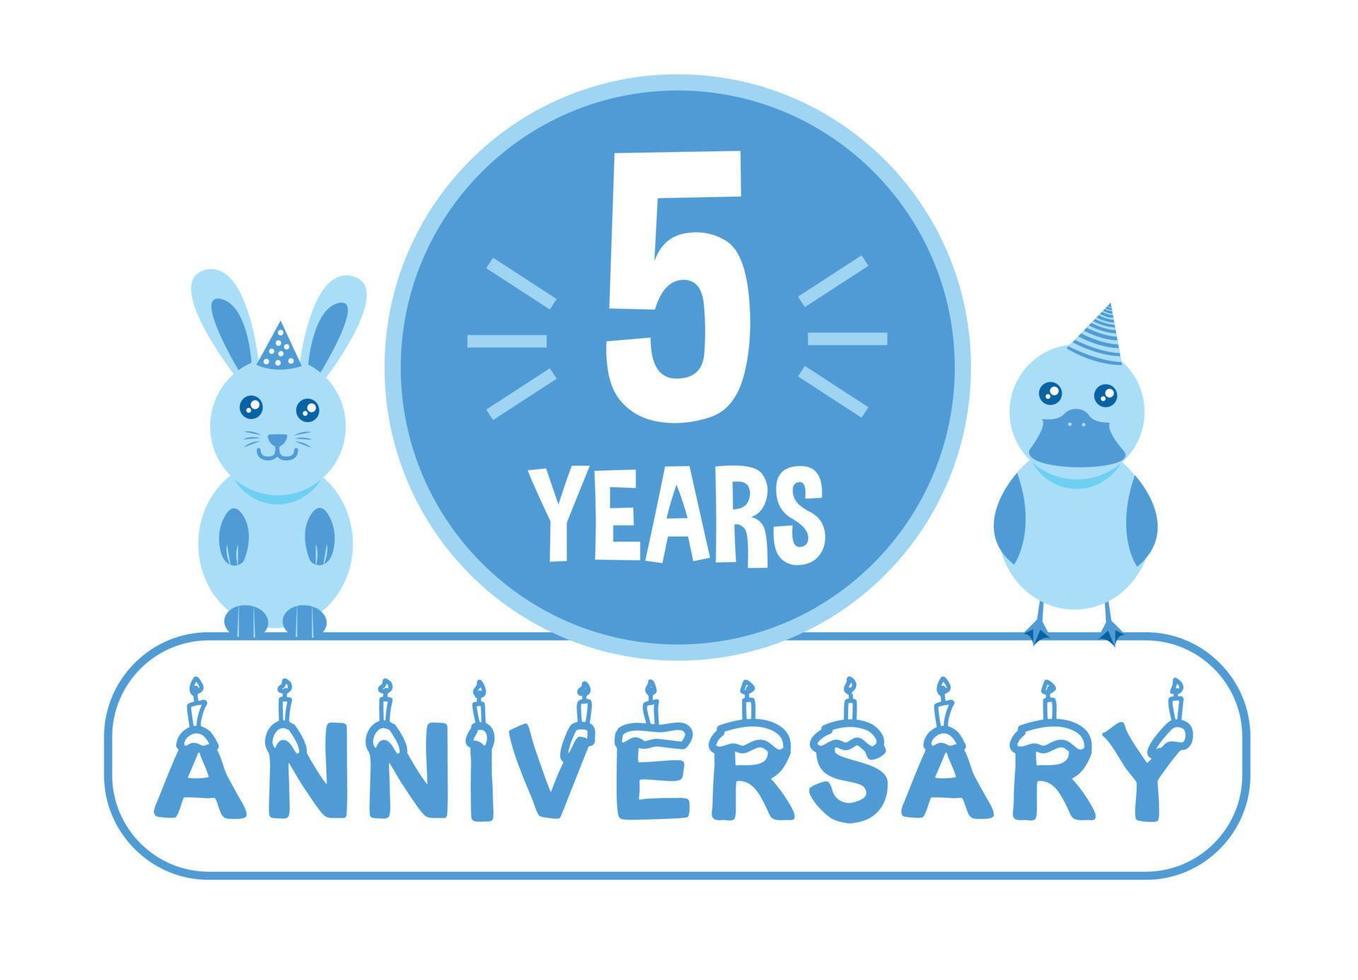 5:e födelsedag. fem år årsdag firande baner med blå djur tema för ungar. vektor